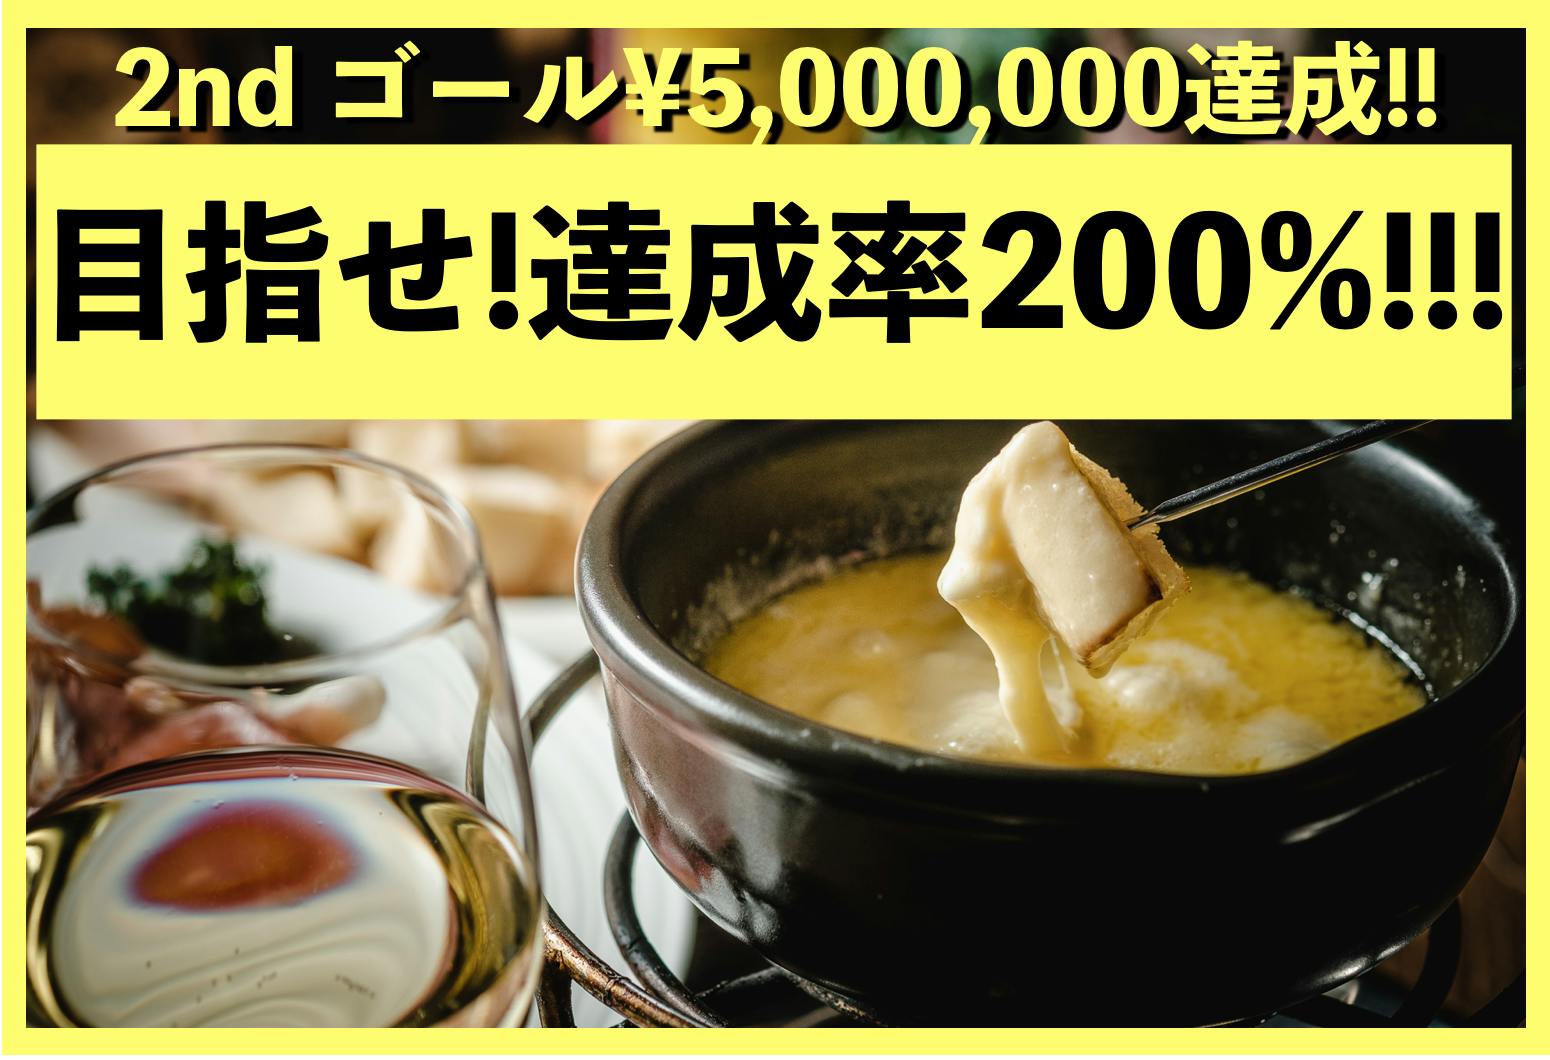 500万円達成!!!! そして200% CAMPFIRE (キャンプファイヤー)